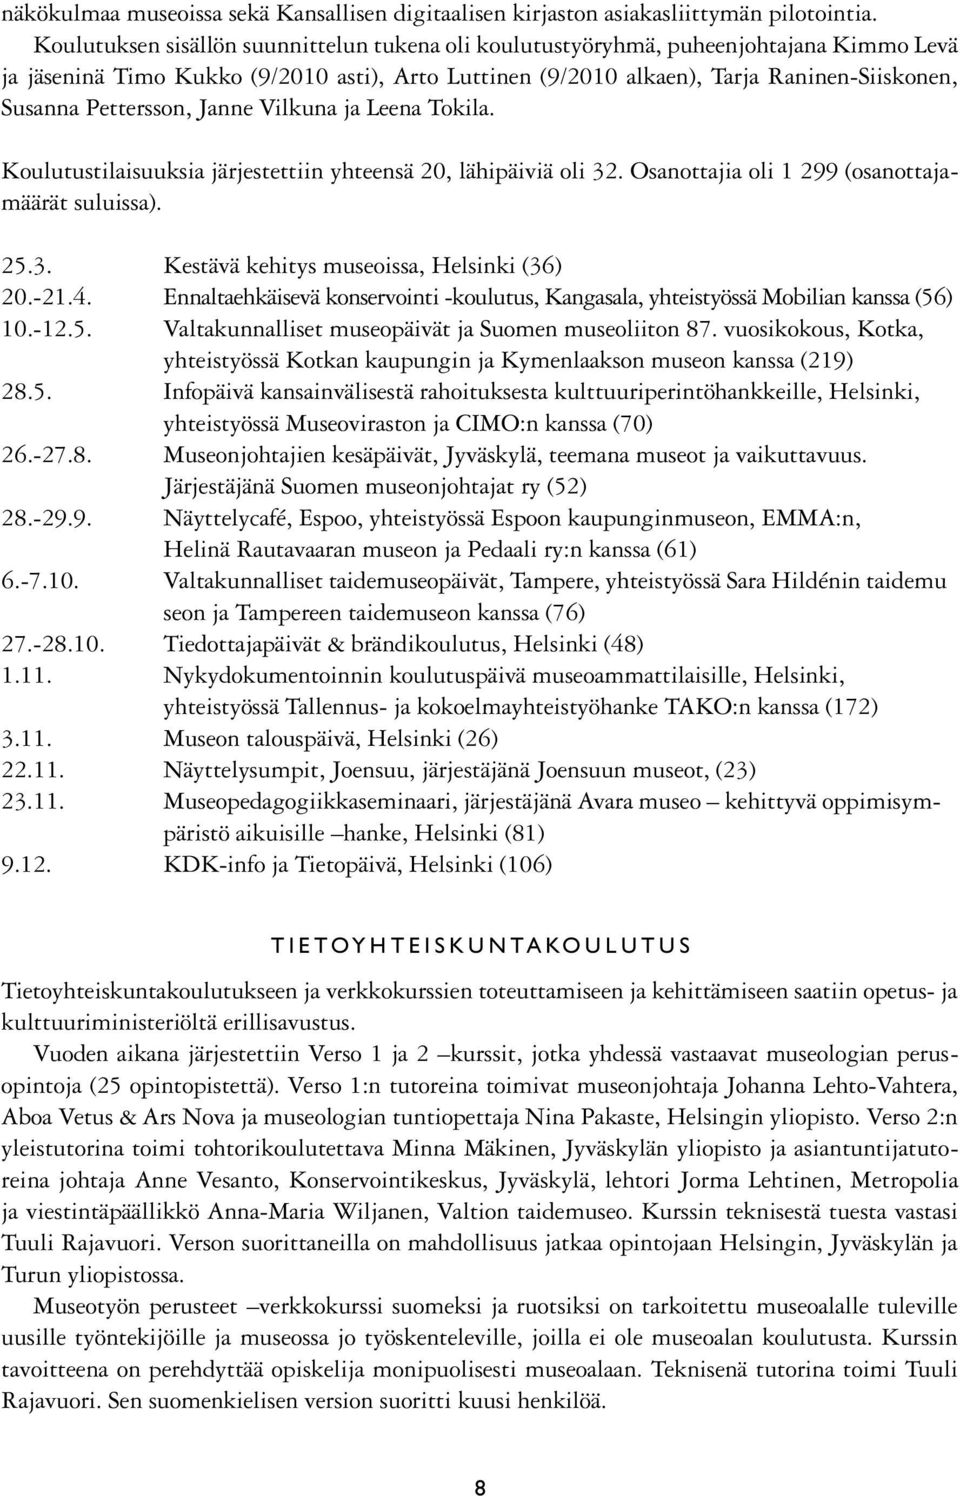 Pettersson, Janne Vilkuna ja Leena Tokila. Koulutustilaisuuksia järjestettiin yhteensä 20, lähipäiviä oli 32. Osanottajia oli 1 299 (osanottajamäärät suluissa). 25.3. Kestävä kehitys museoissa, Helsinki (36) 20.